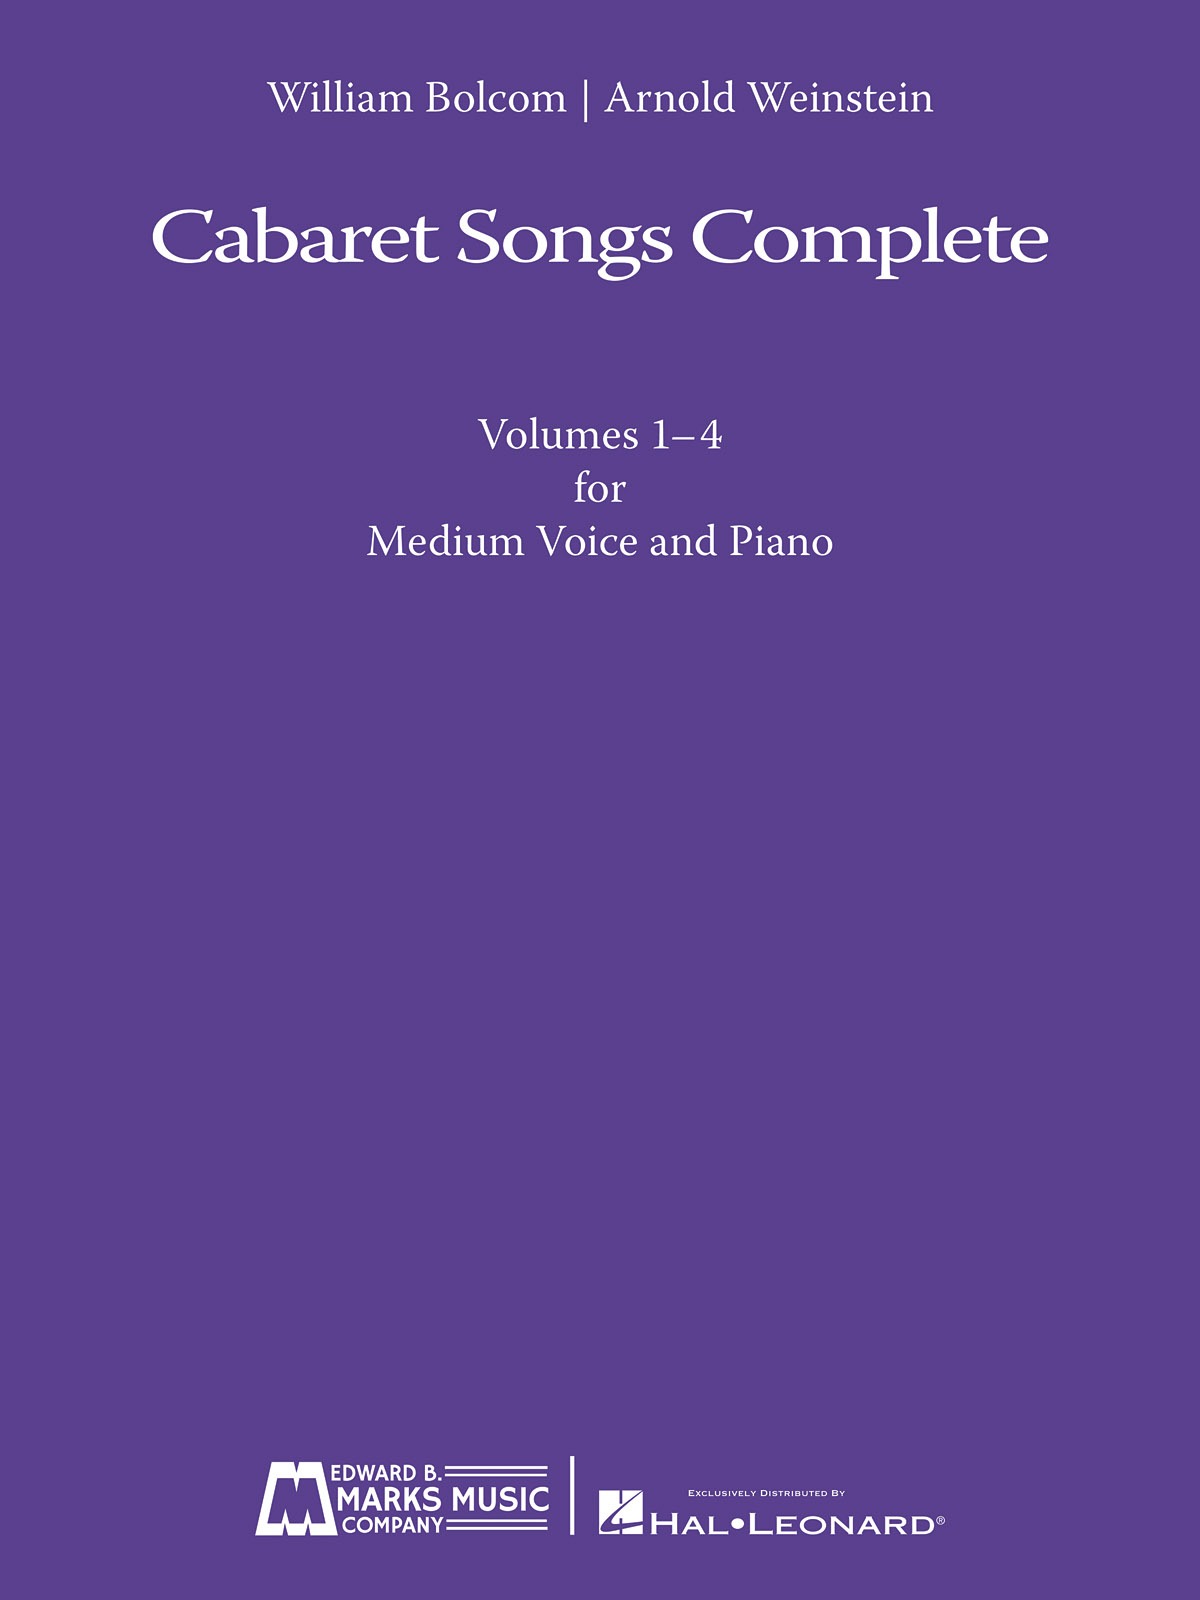 Cabaret Songs Complete Vol. 1-4 - noty pro zpěv a klavír